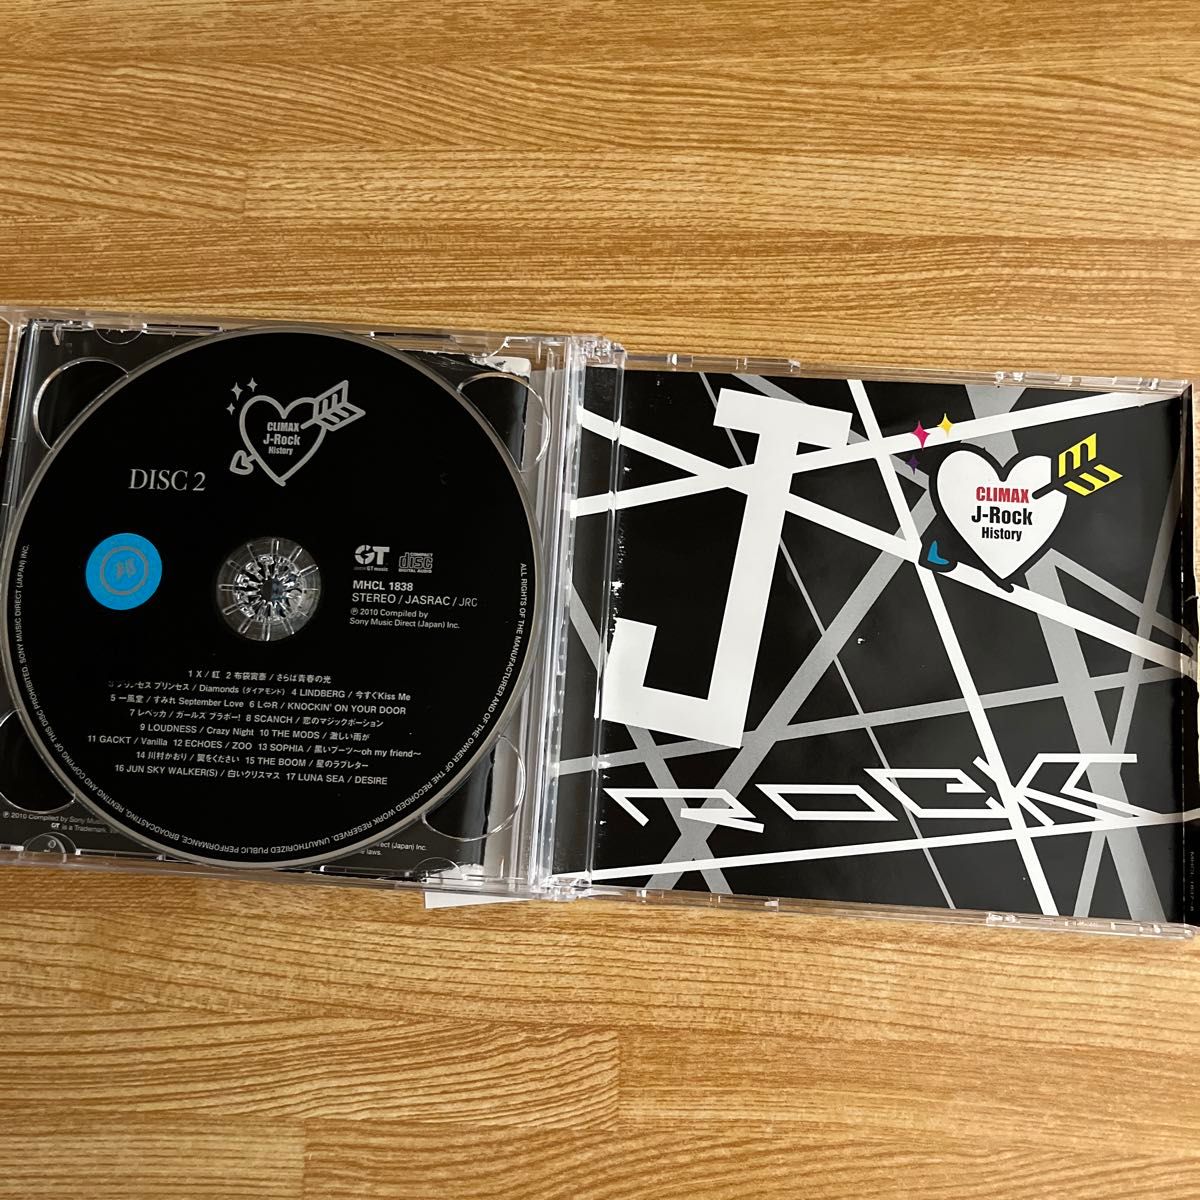 クライマックス J-ロックヒストリー CD (オムニバス) 佐野元春、一風堂、THE MODS